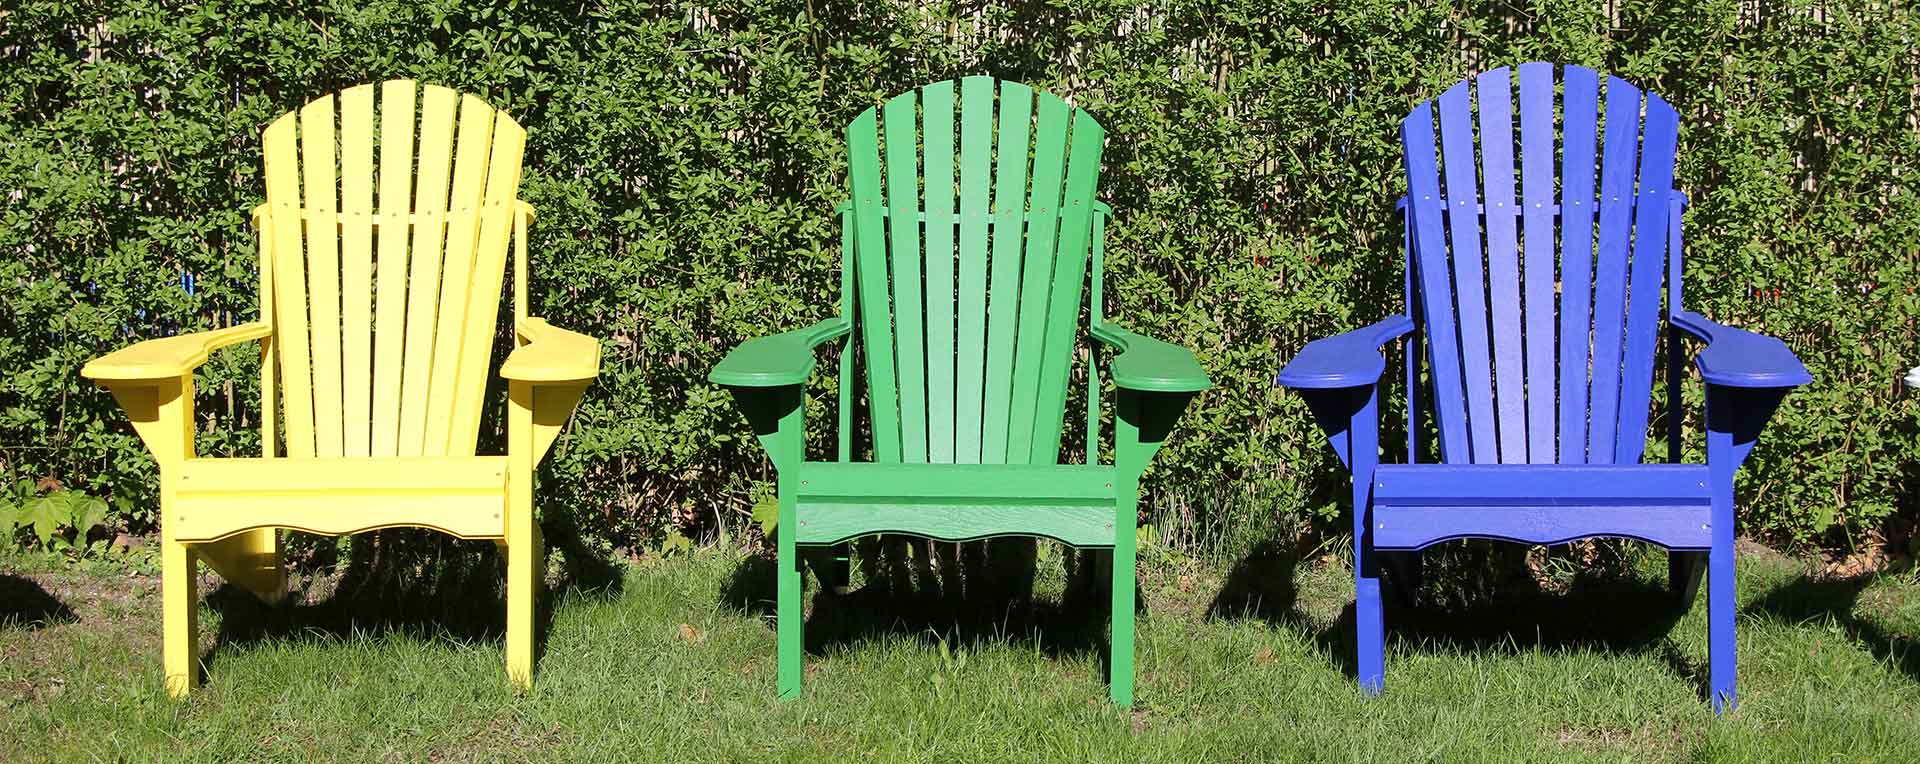 Muskoka Chair, Adirondack Chair, Gartenstühle aus Norderstedt